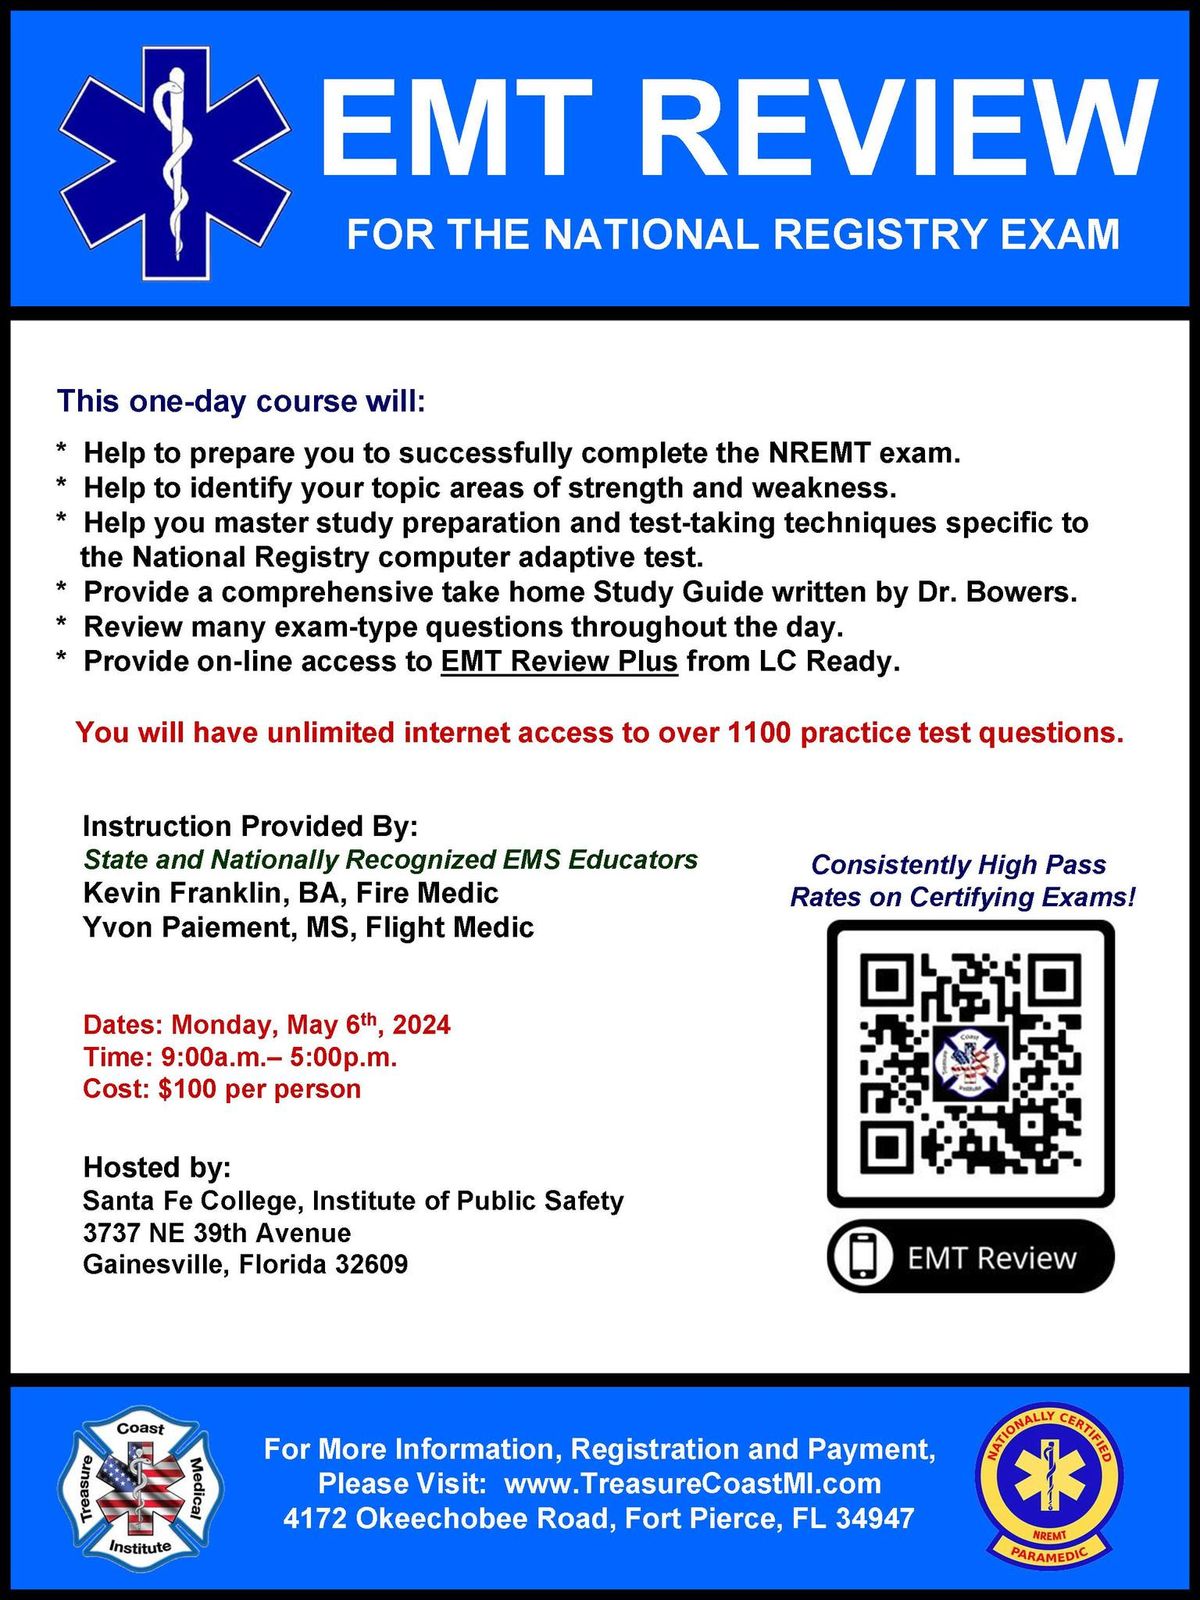 EMT Review for National Registry Exam